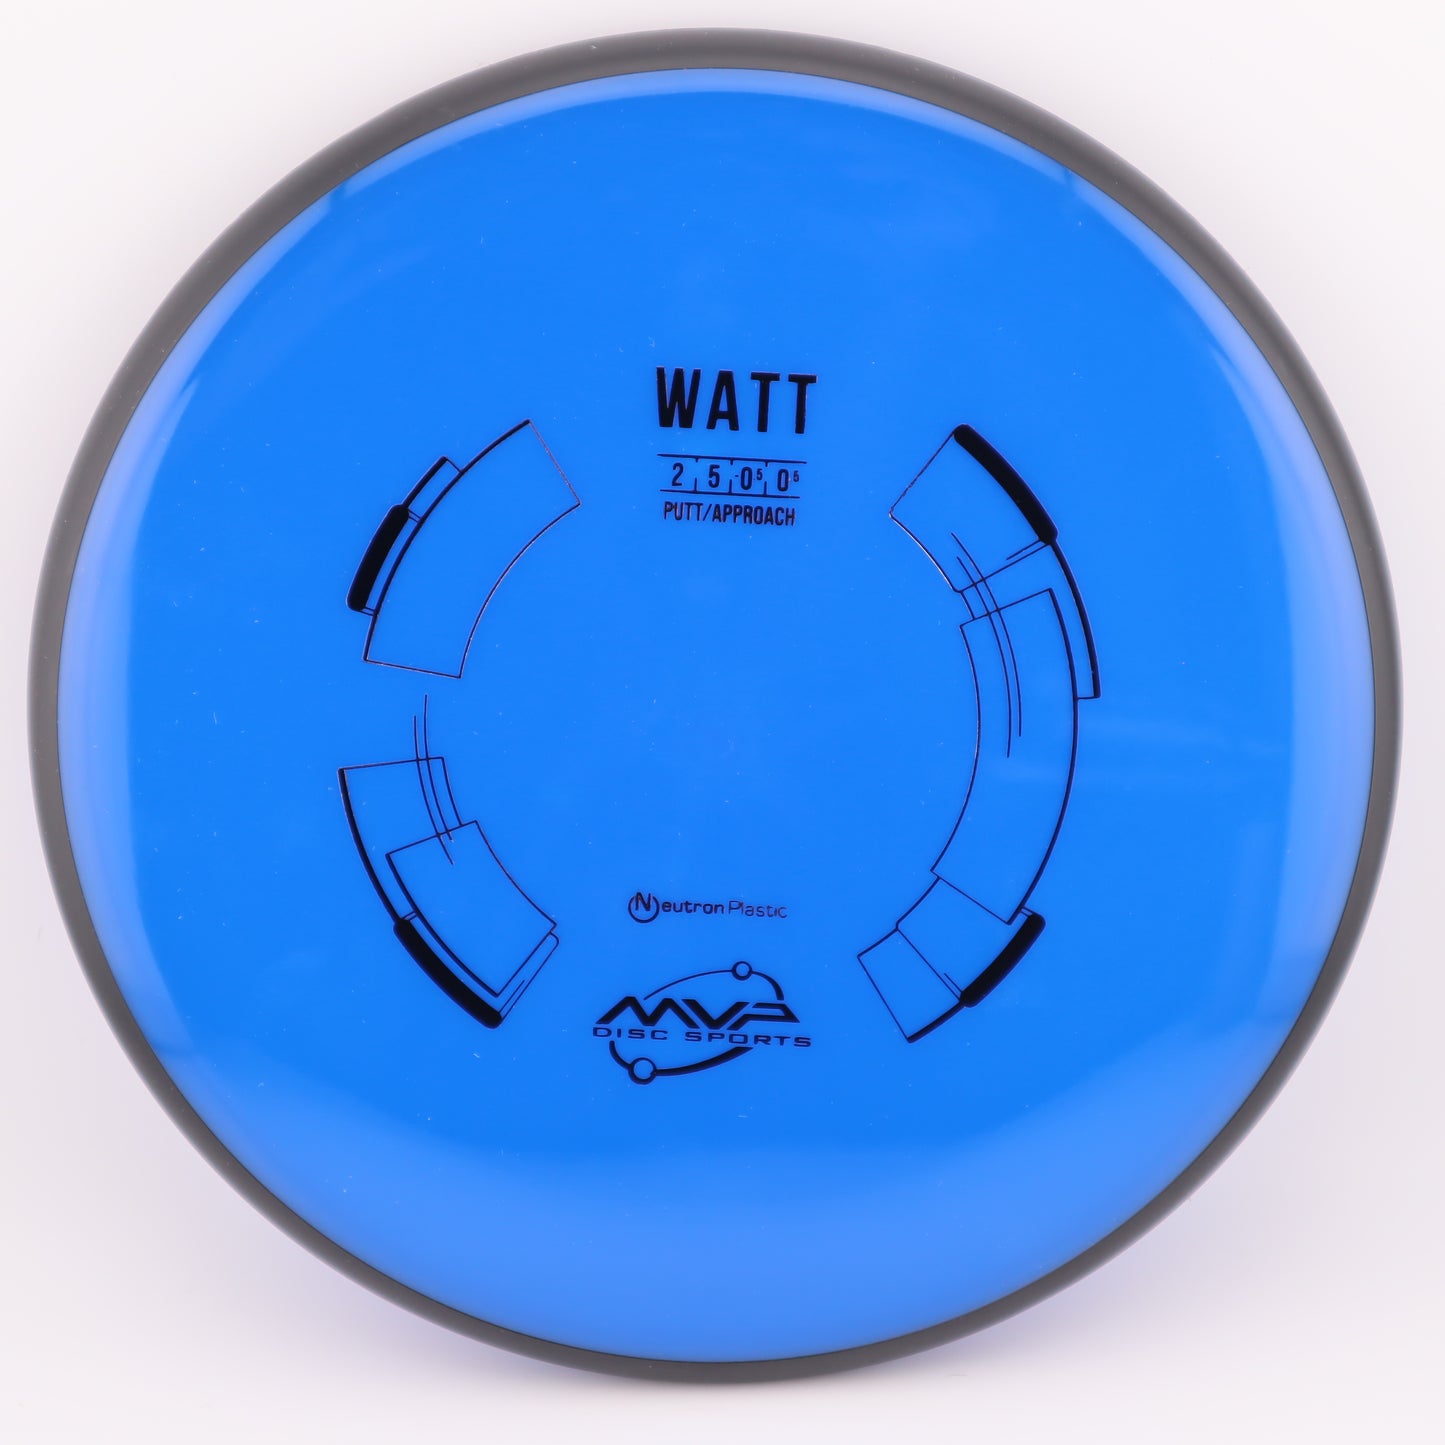 MVP Watt Neutron Stable Putt & Approach - Good Vibes Disc Golf